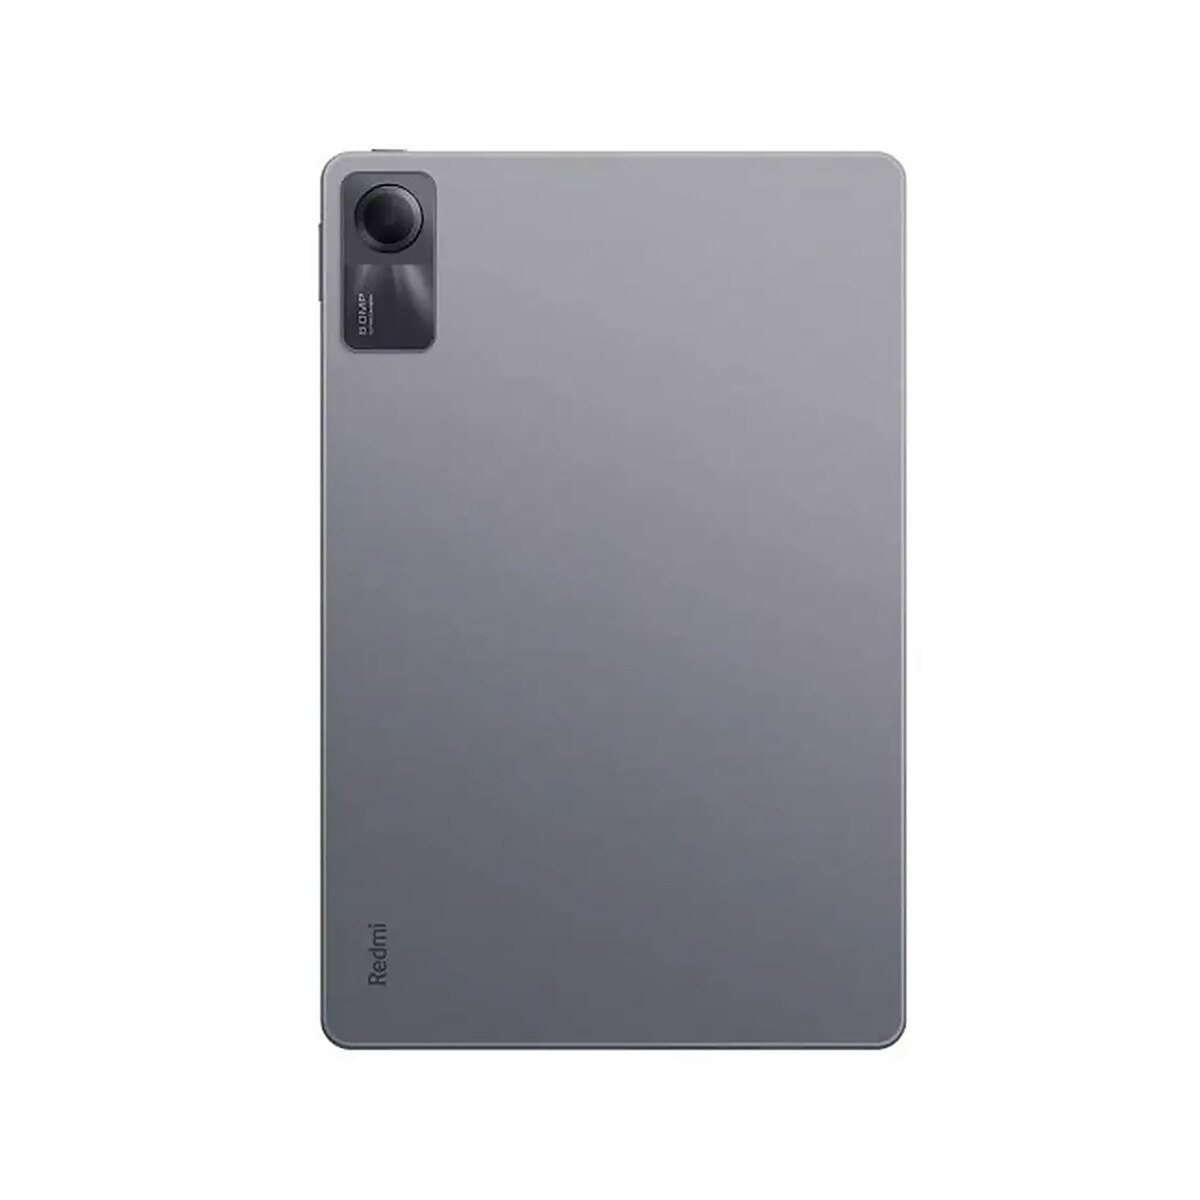 Xiaomi Redmi Pad SE 8GB 256GB Graphite Gray